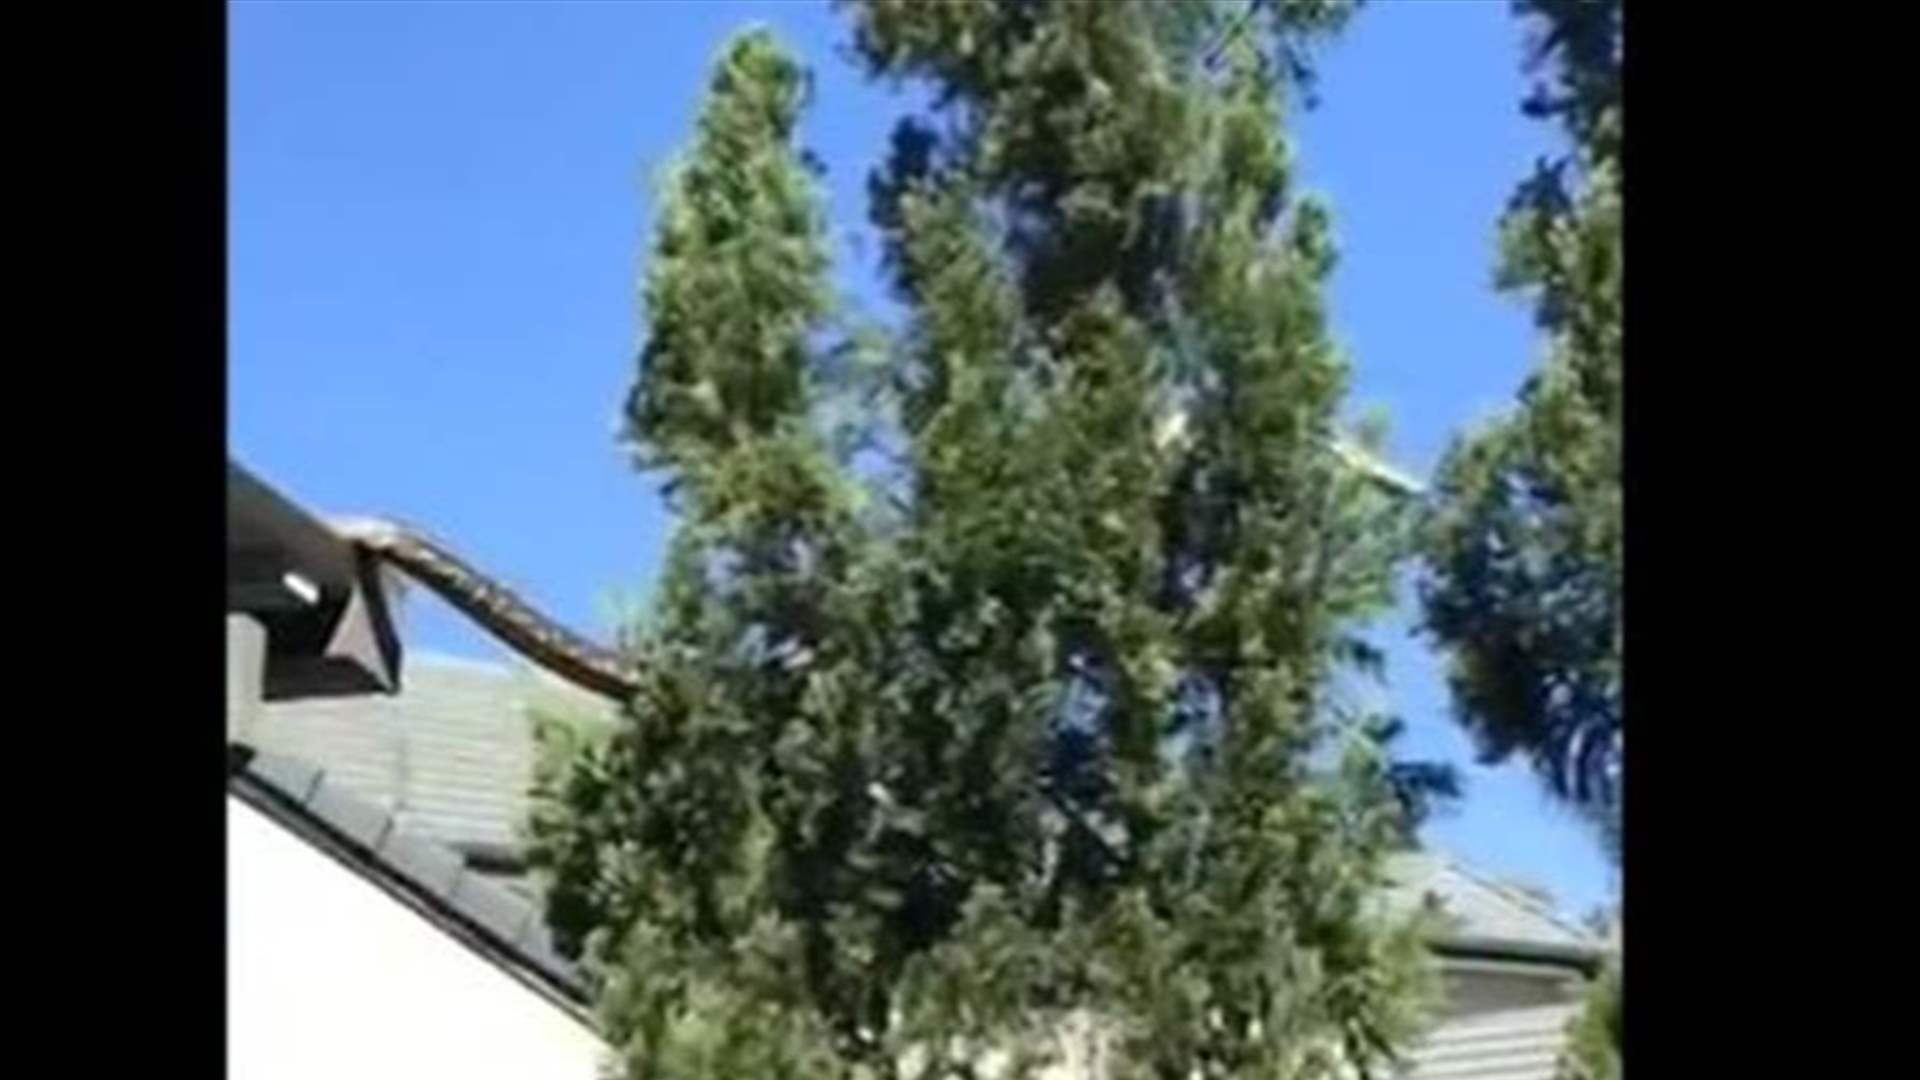 بالفيديو - &quot;ثعبان عملاق&quot; يتنقل من سطح مبنى الى شجرة والعائلة تراقب